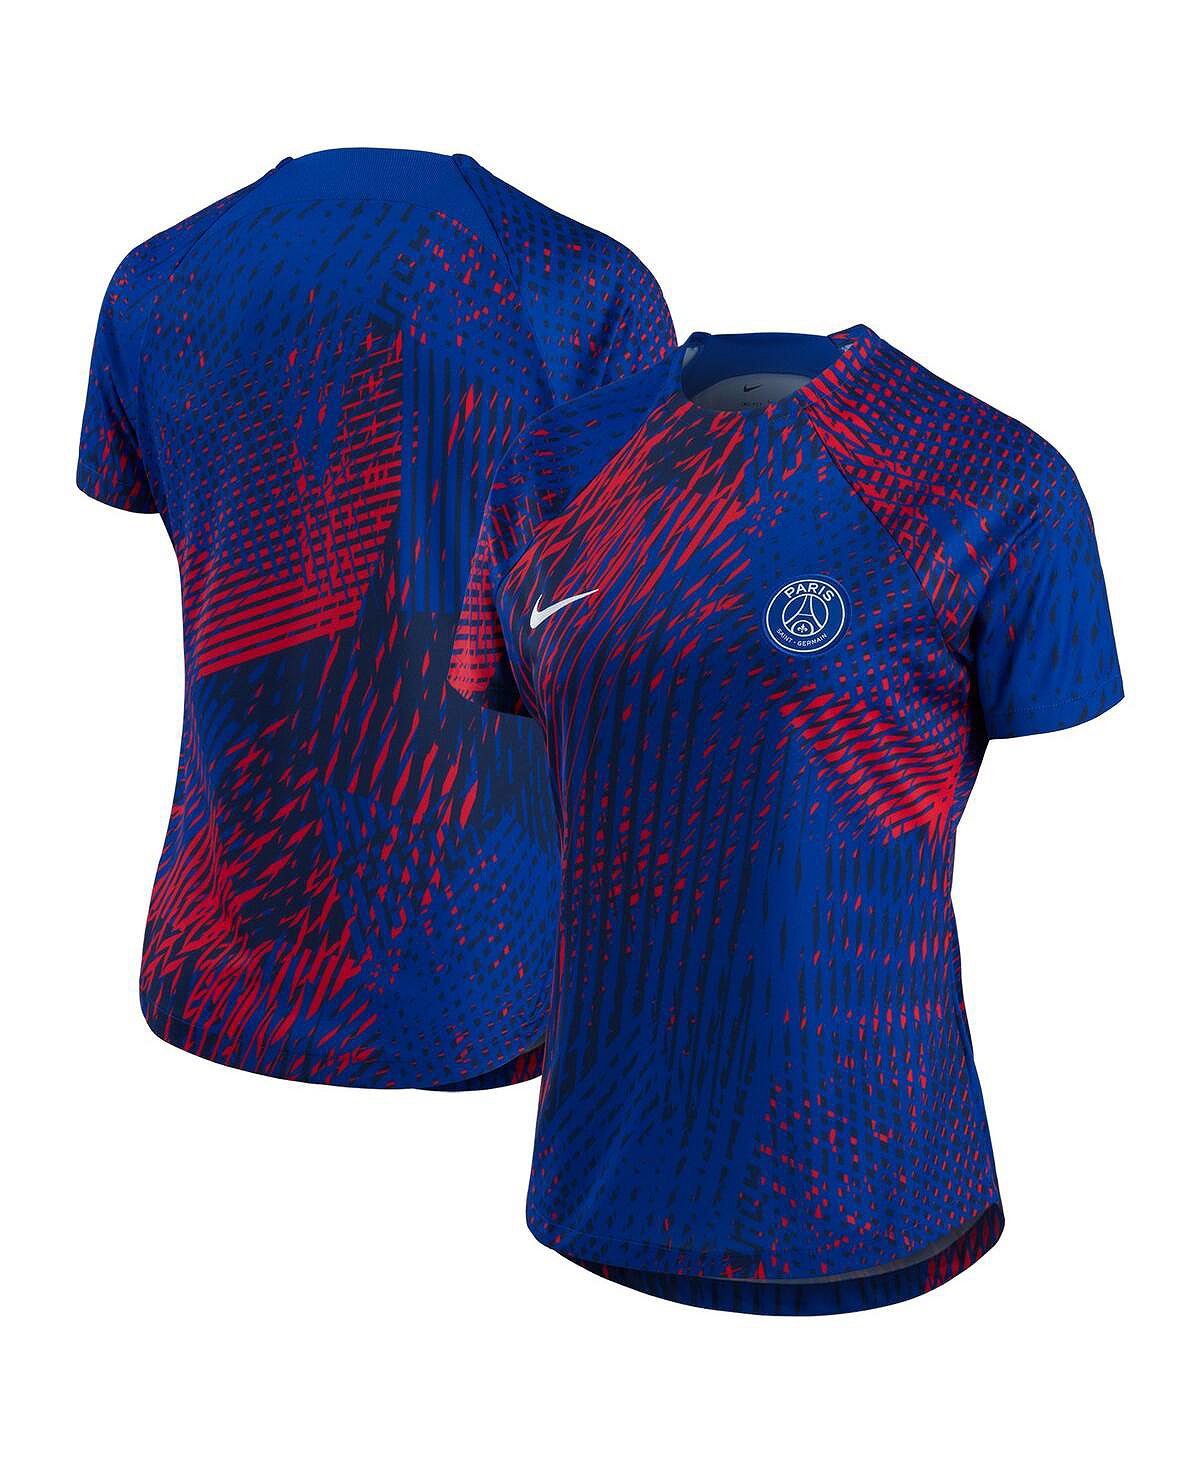 Женская предматчевая футболка синего цвета paris saint-germain 2022 Nike, синий